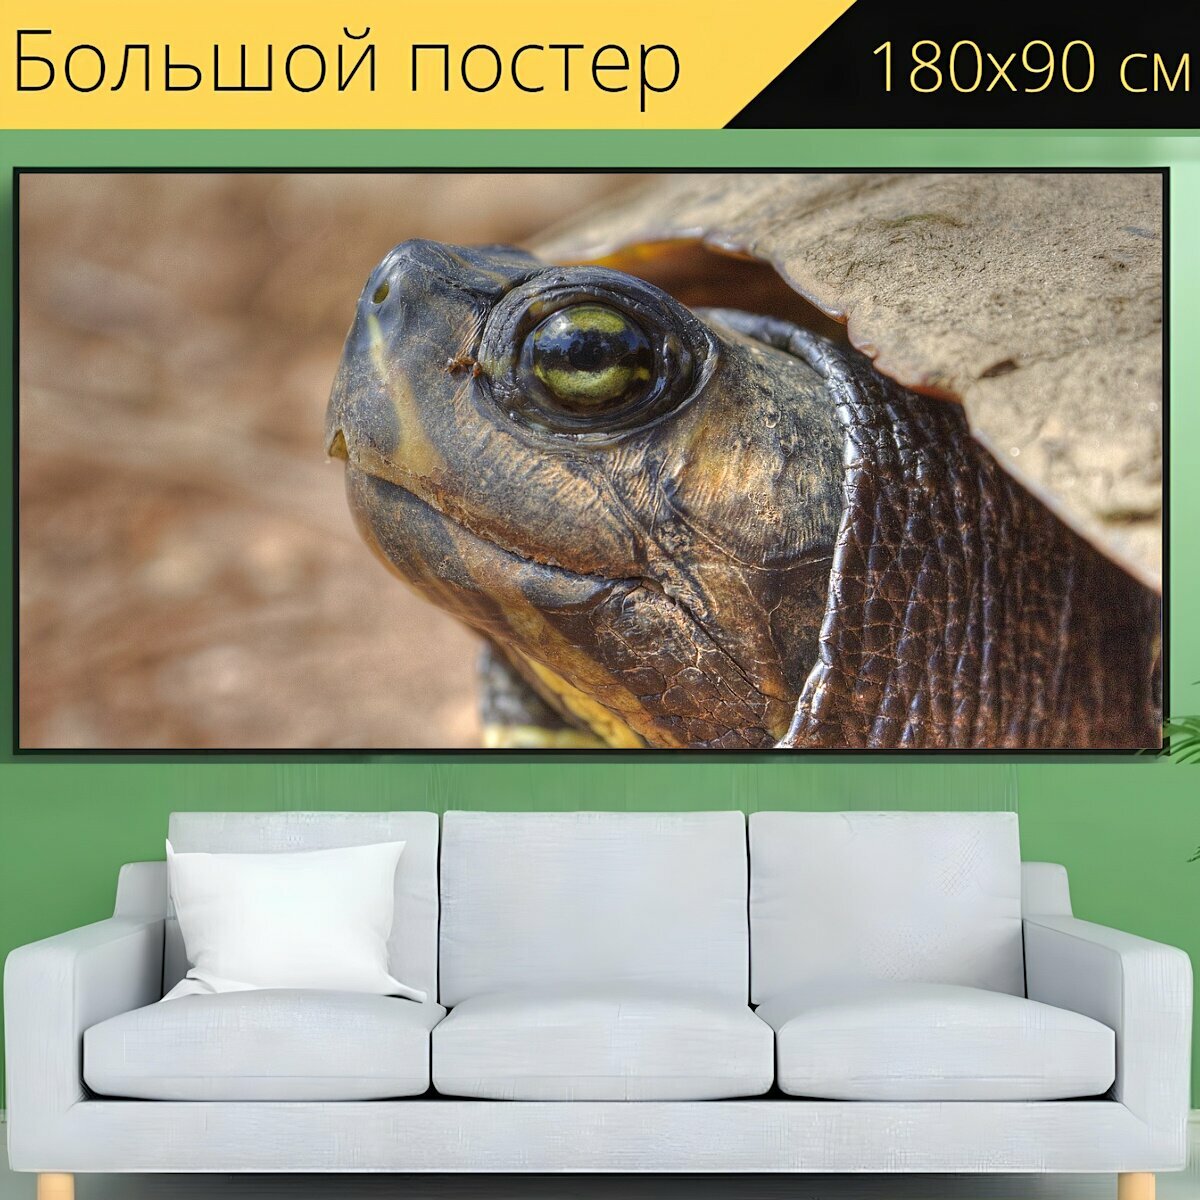 Большой постер "Черепаха, закрыть, дикая природа" 180 x 90 см. для интерьера